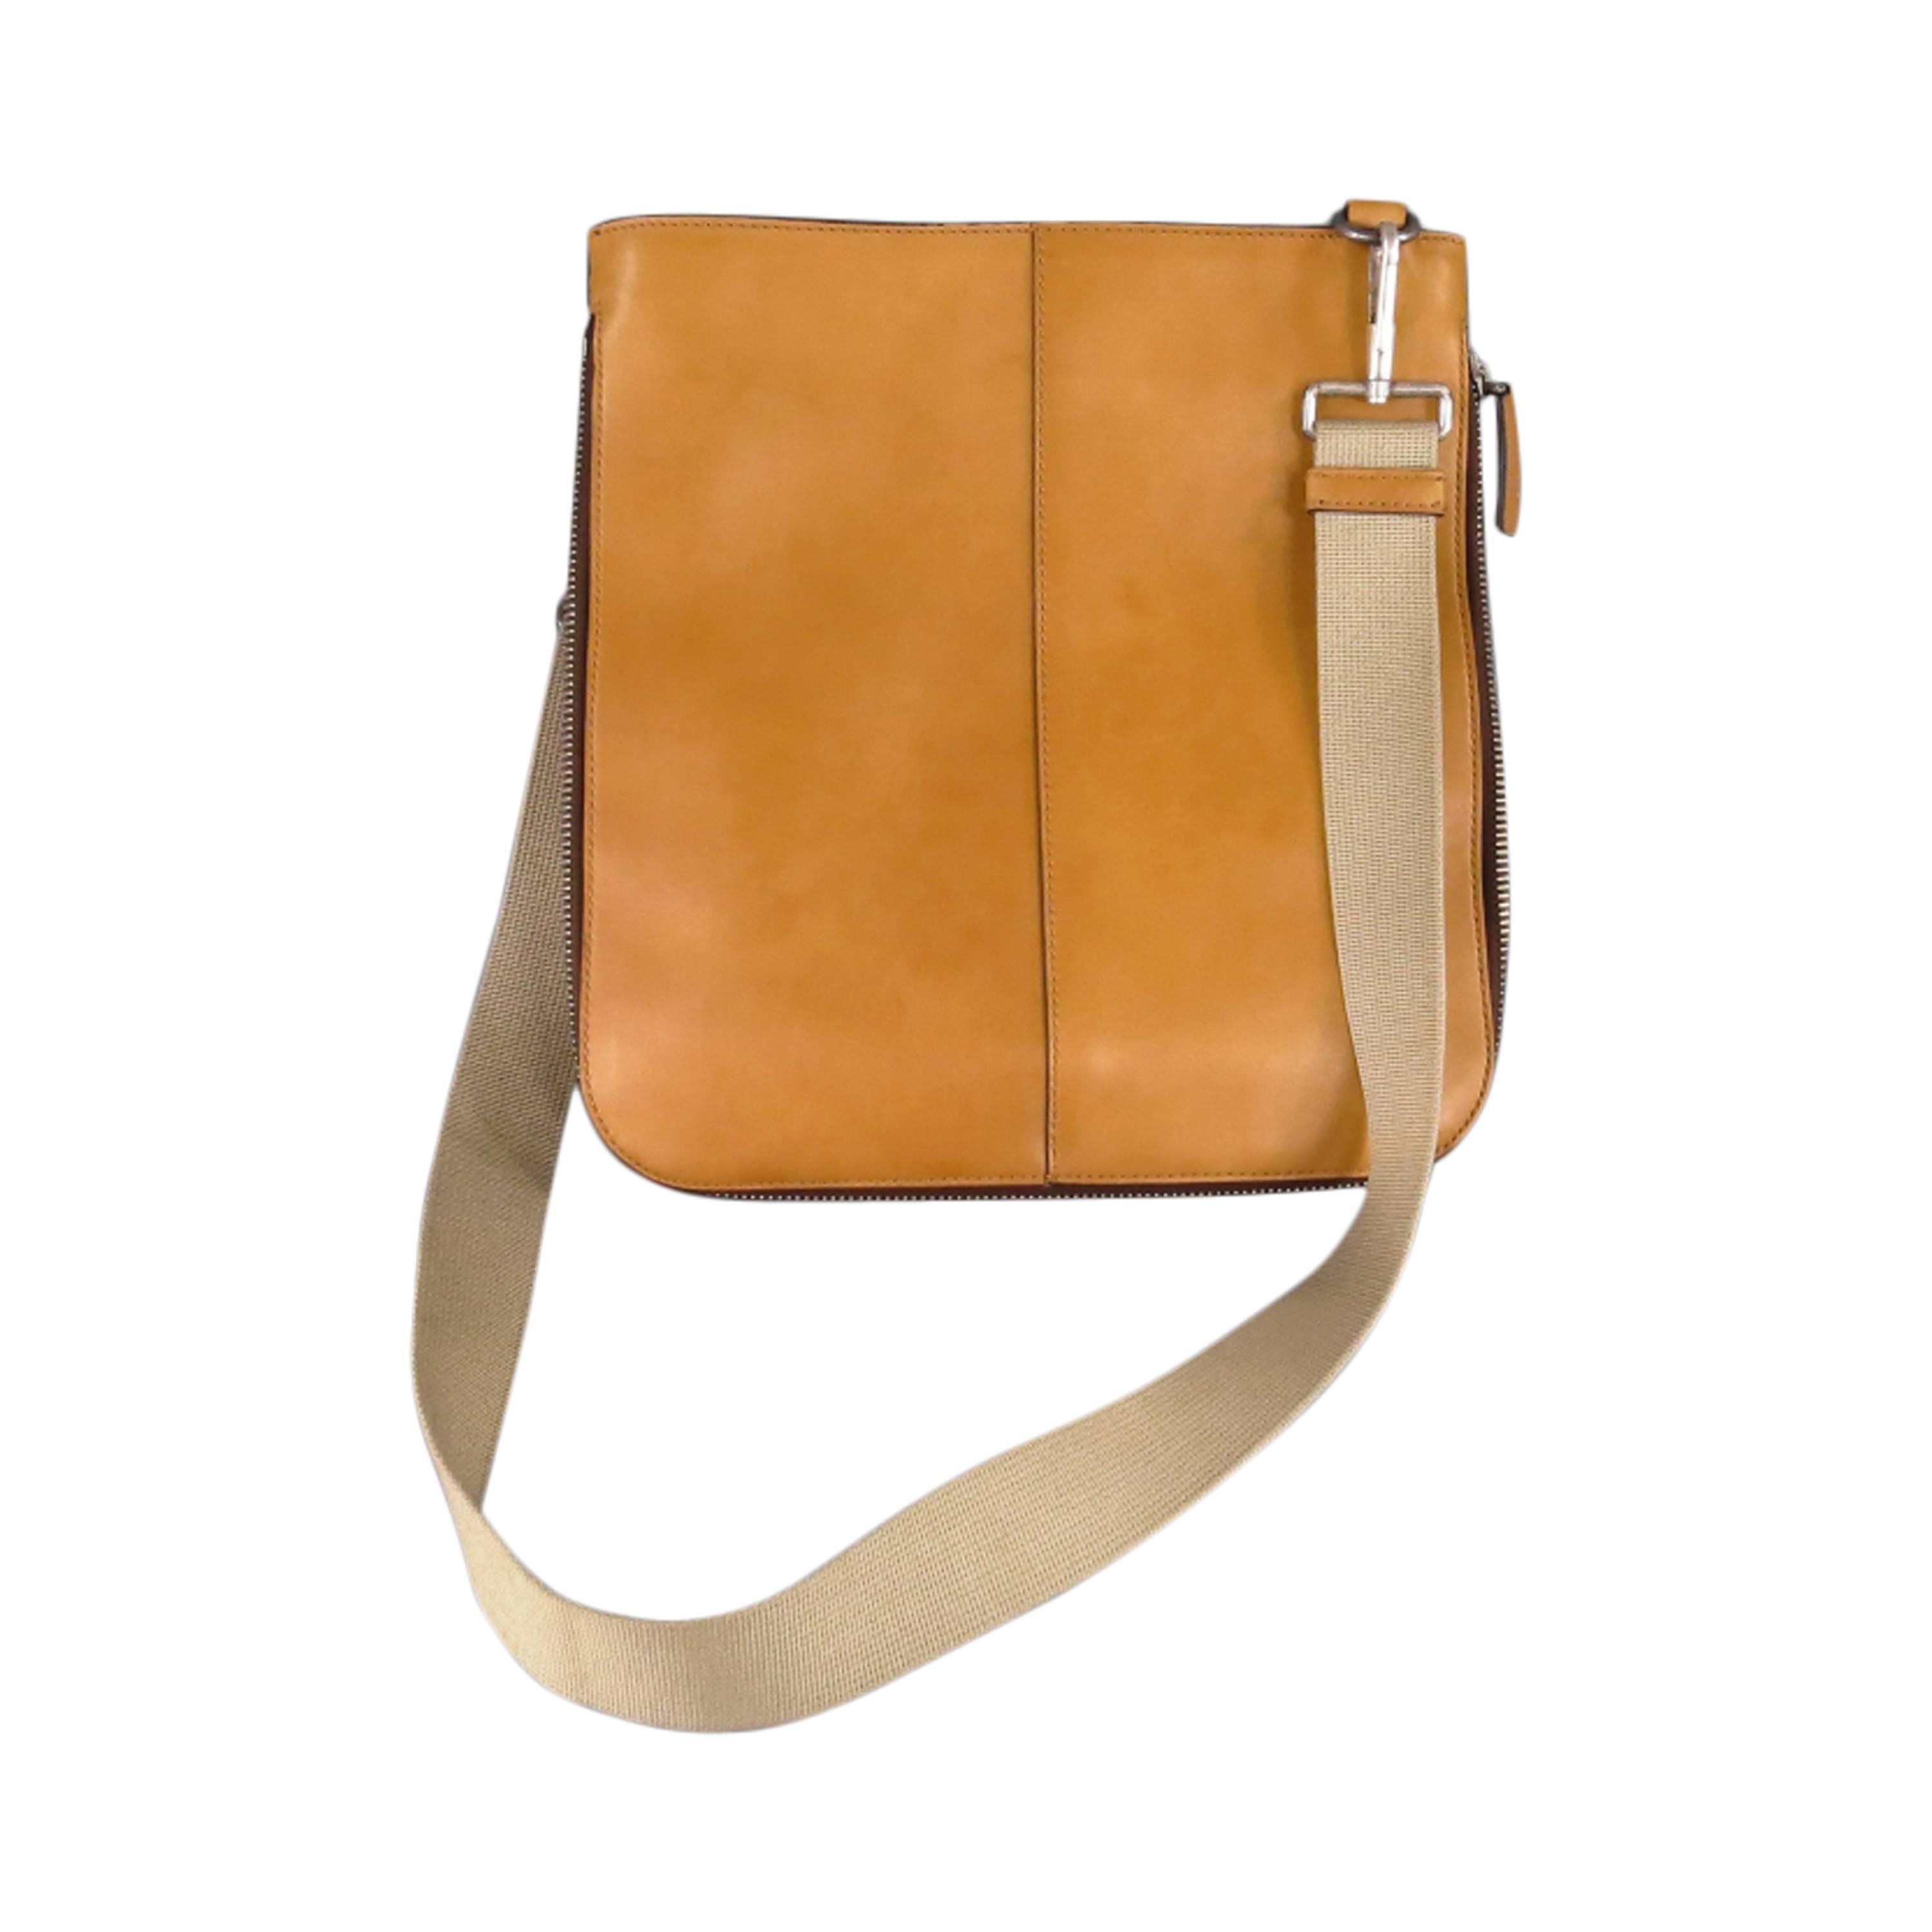 YVES SAINT LAURENT Tan Leather Messanger Shoulder Bag